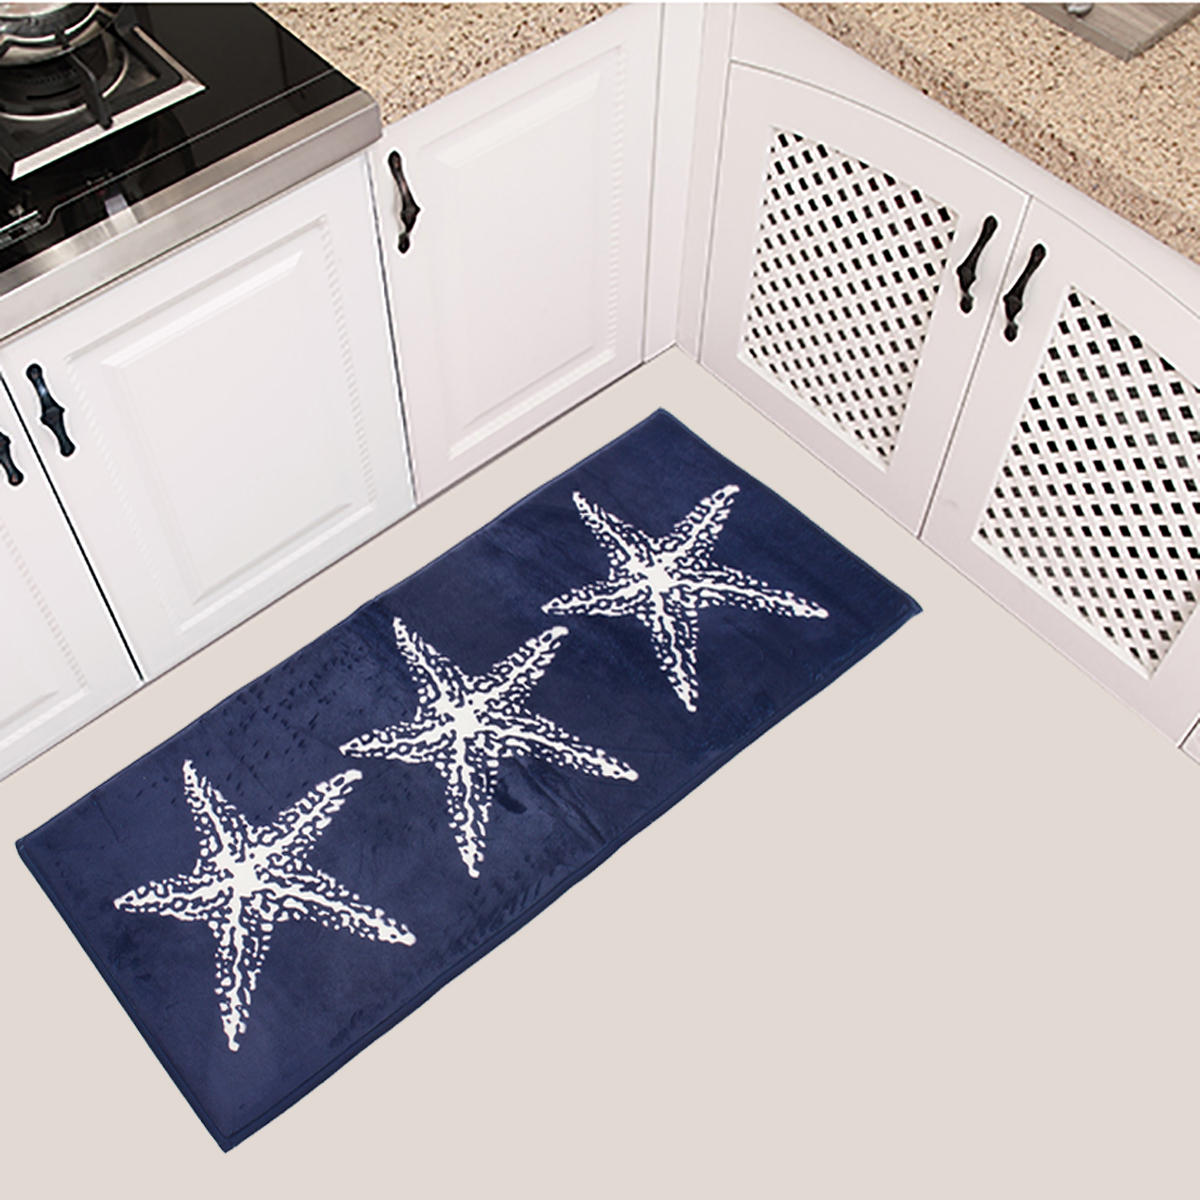 45x115cm antislip Soft flanellen deurmat keuken vloerkleed badkamer tapijt blauw